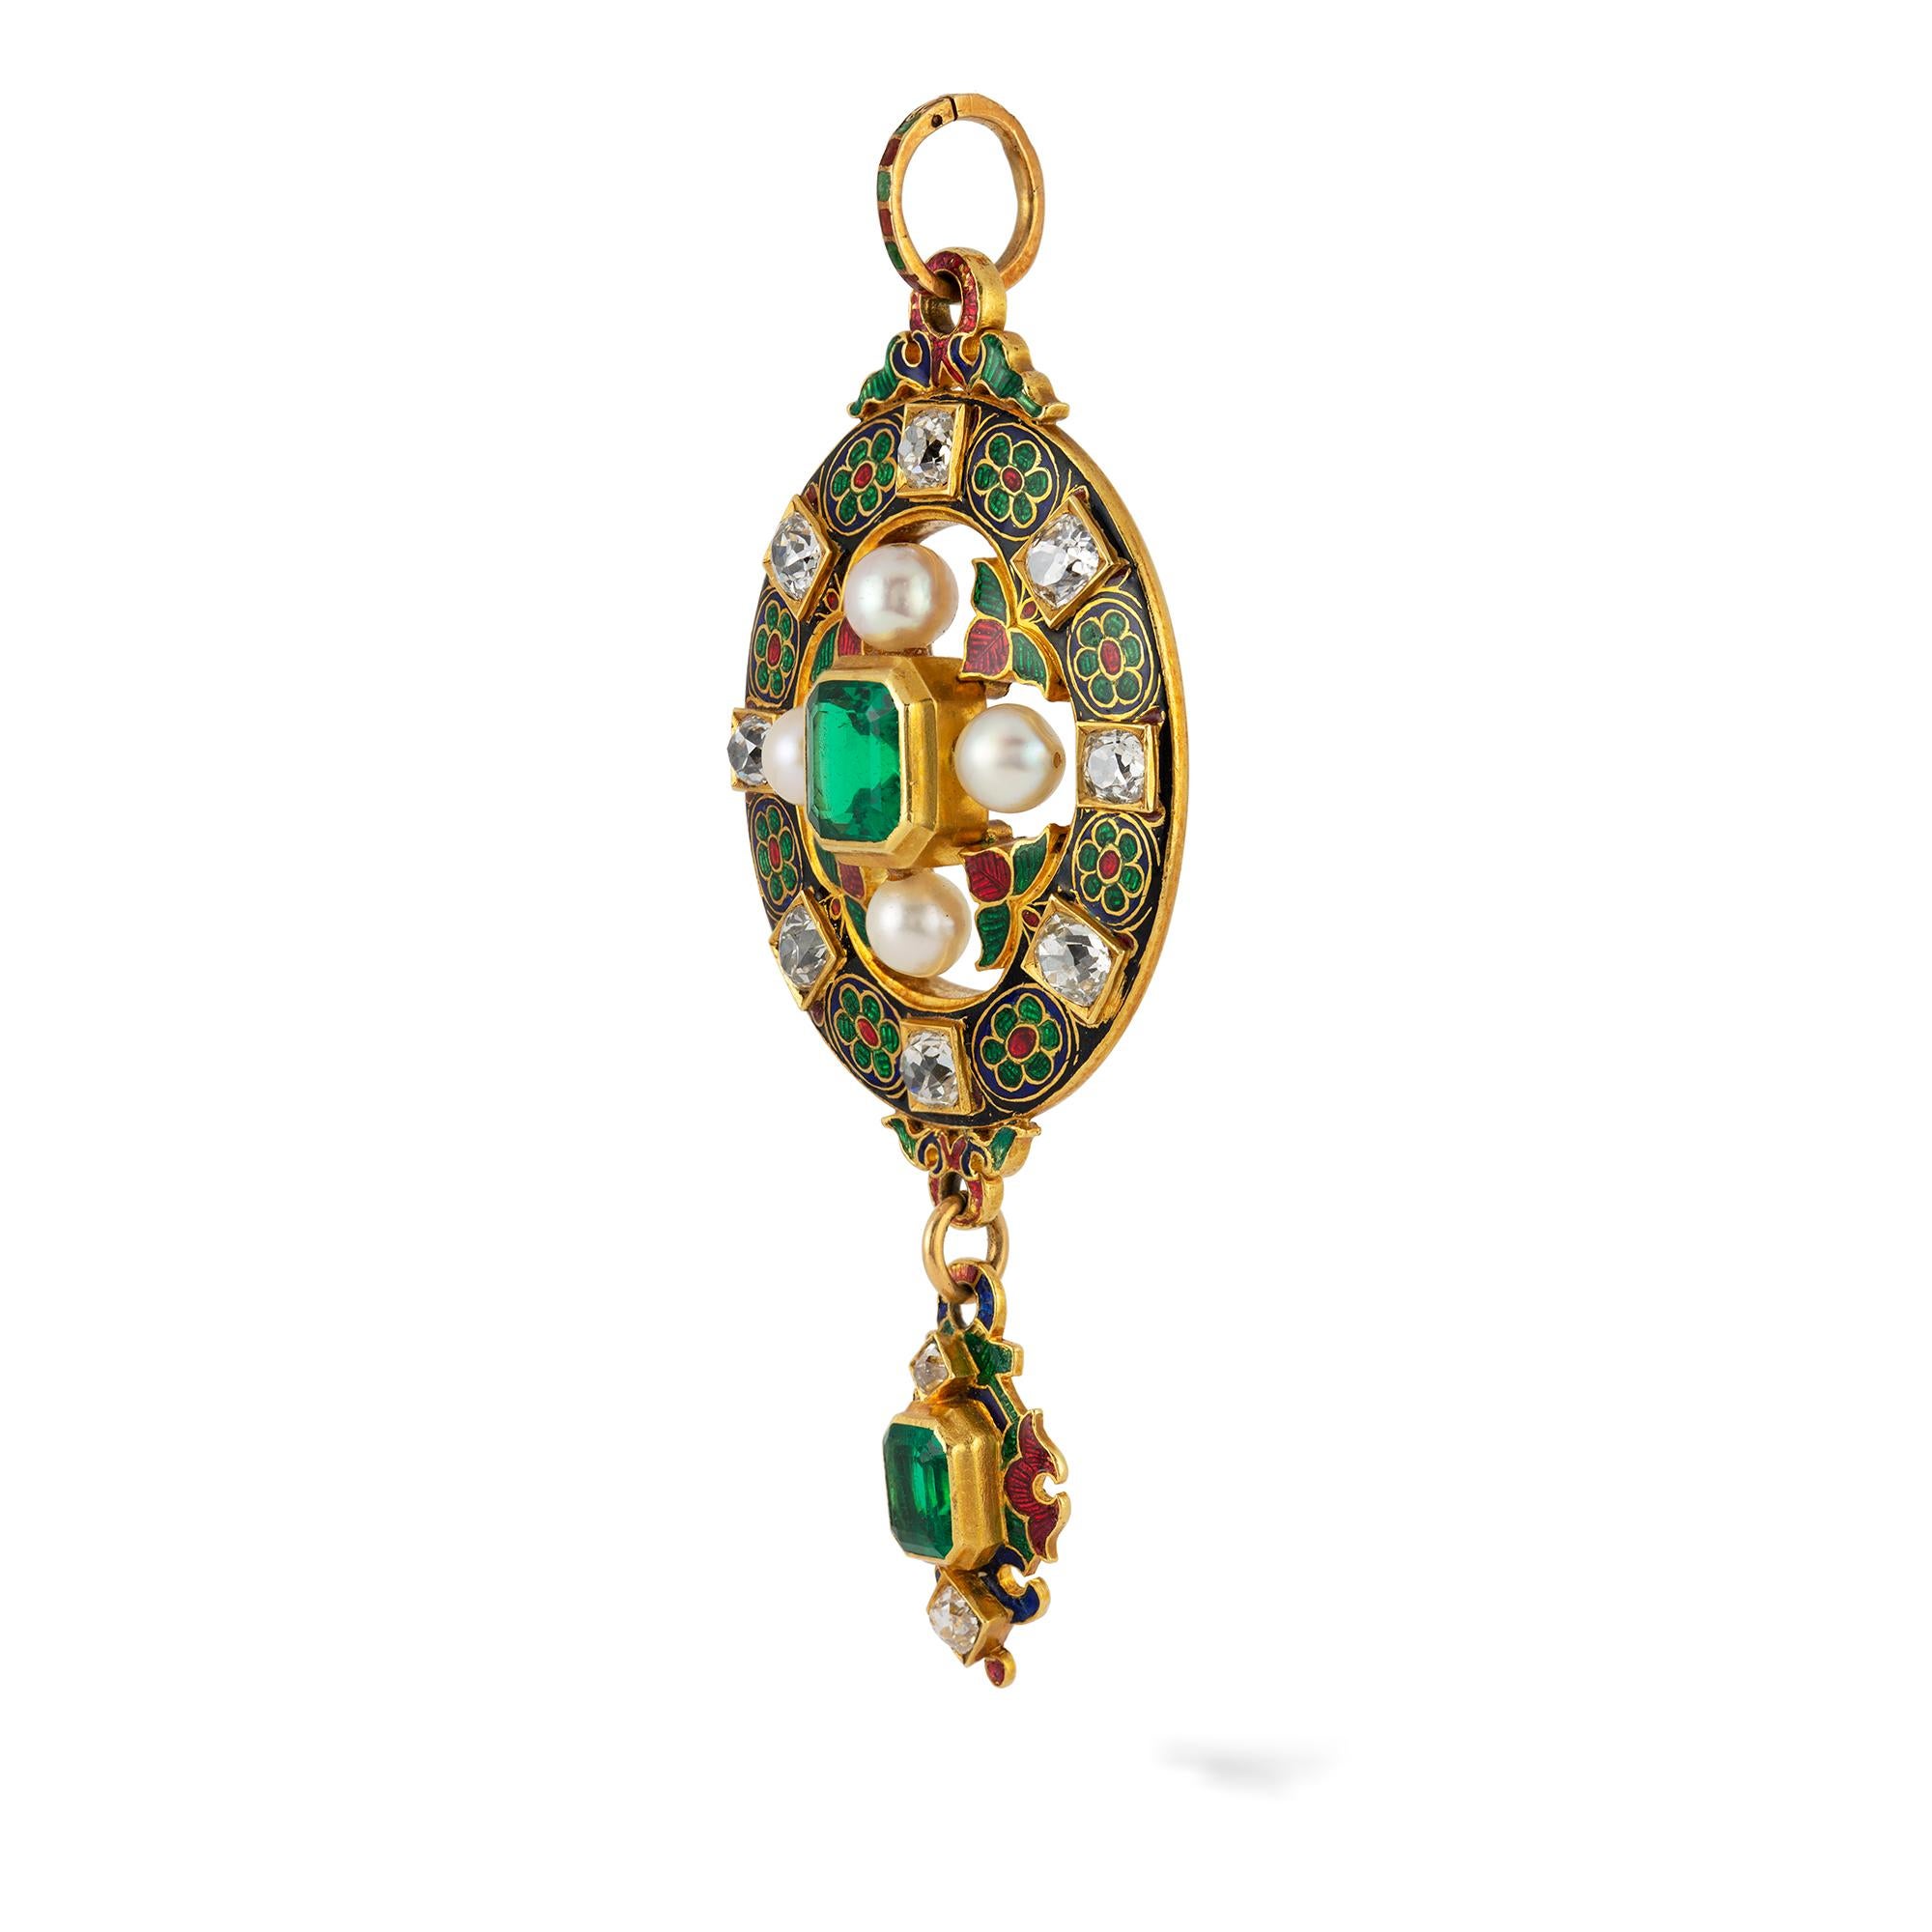 Ein viktorianischer Smaragd-, Diamant- und Perlenanhänger im Holbeinesken-Stil, in der Mitte ein Smaragd im Quadratschliff mit einem geschätzten Gewicht von 1,75 Karat, kreuzweise gefasst mit vier Perlen mit emaillierten Zinnen, umgeben von einem